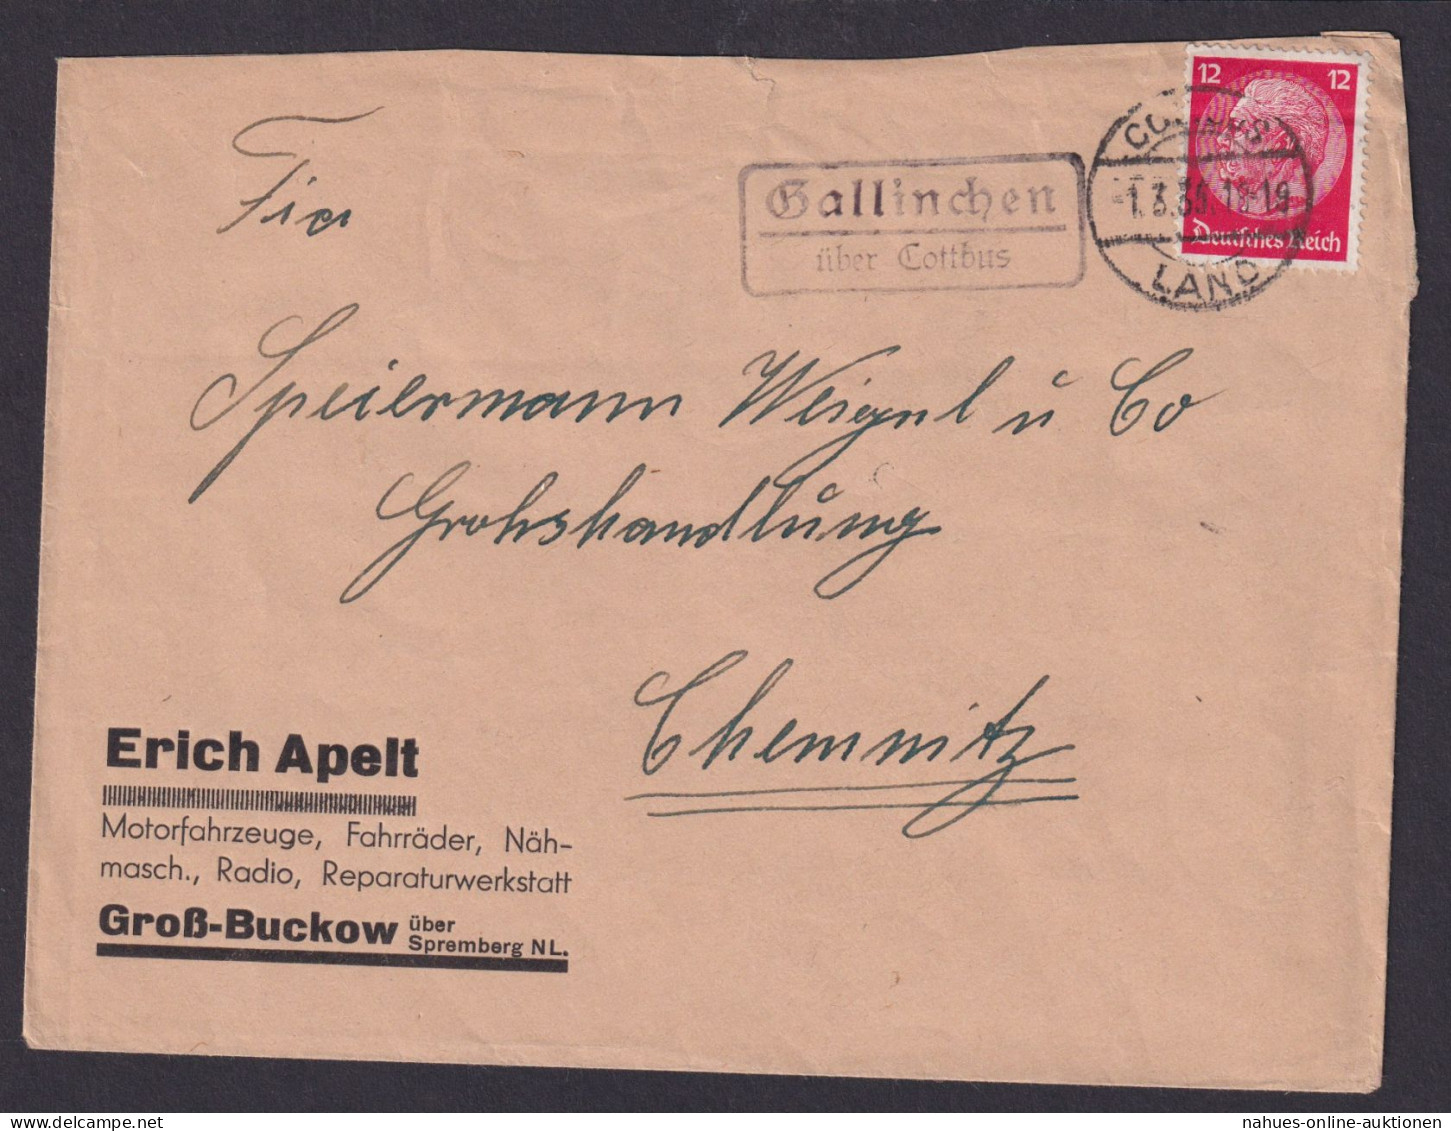 Gallinchen über Cottbus Brandenburg Deutsches Reich Brief Landpoststempel - Covers & Documents